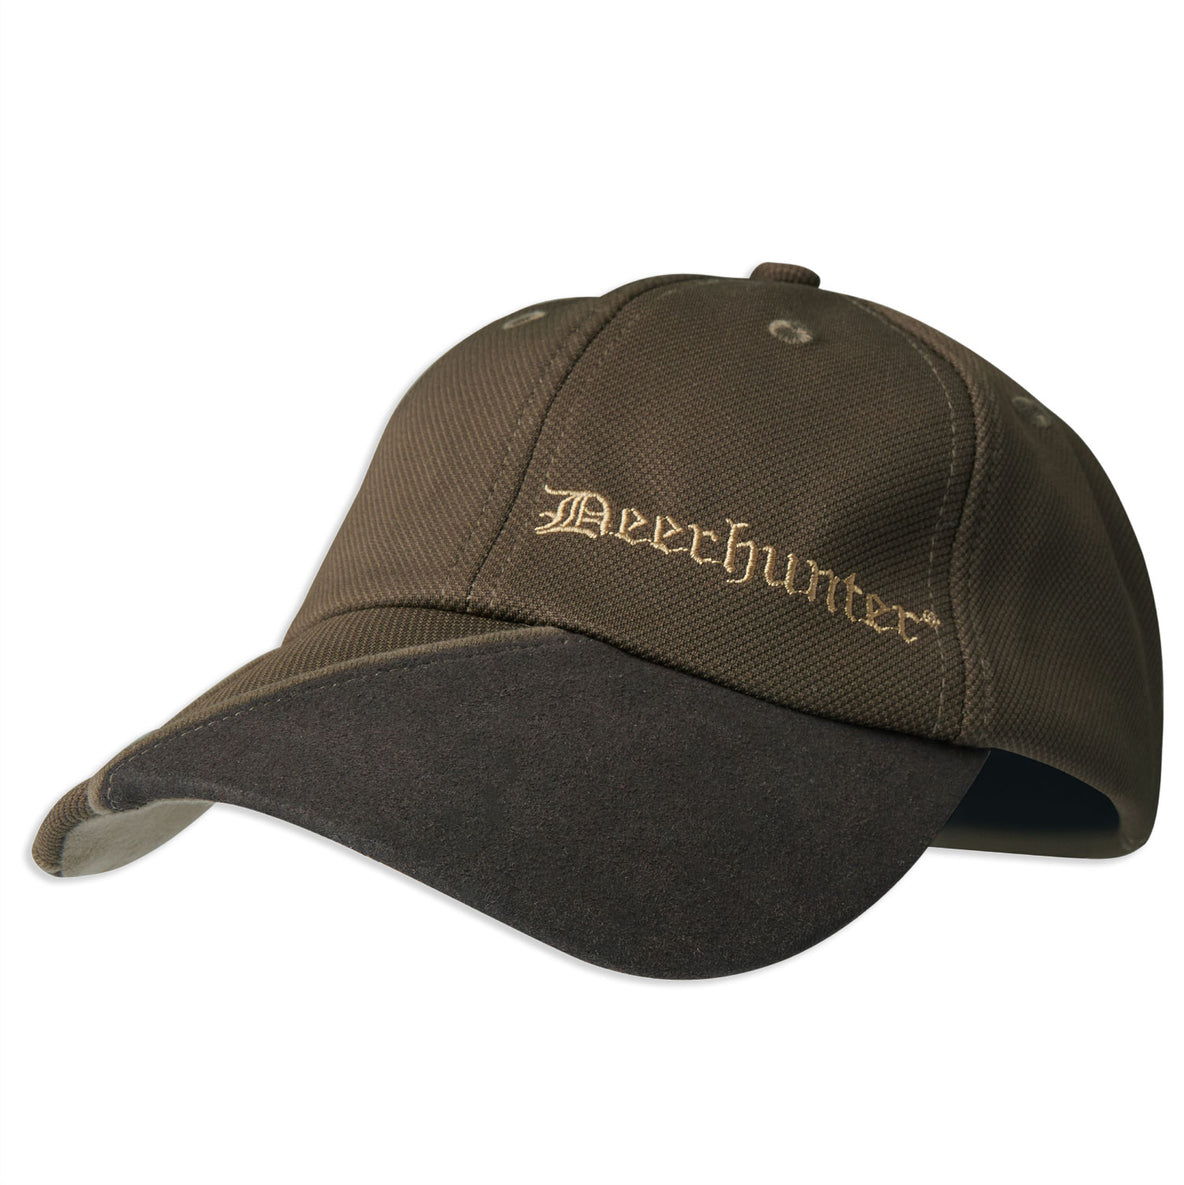 Deerhunter Muflon Baseball Hunting Cap